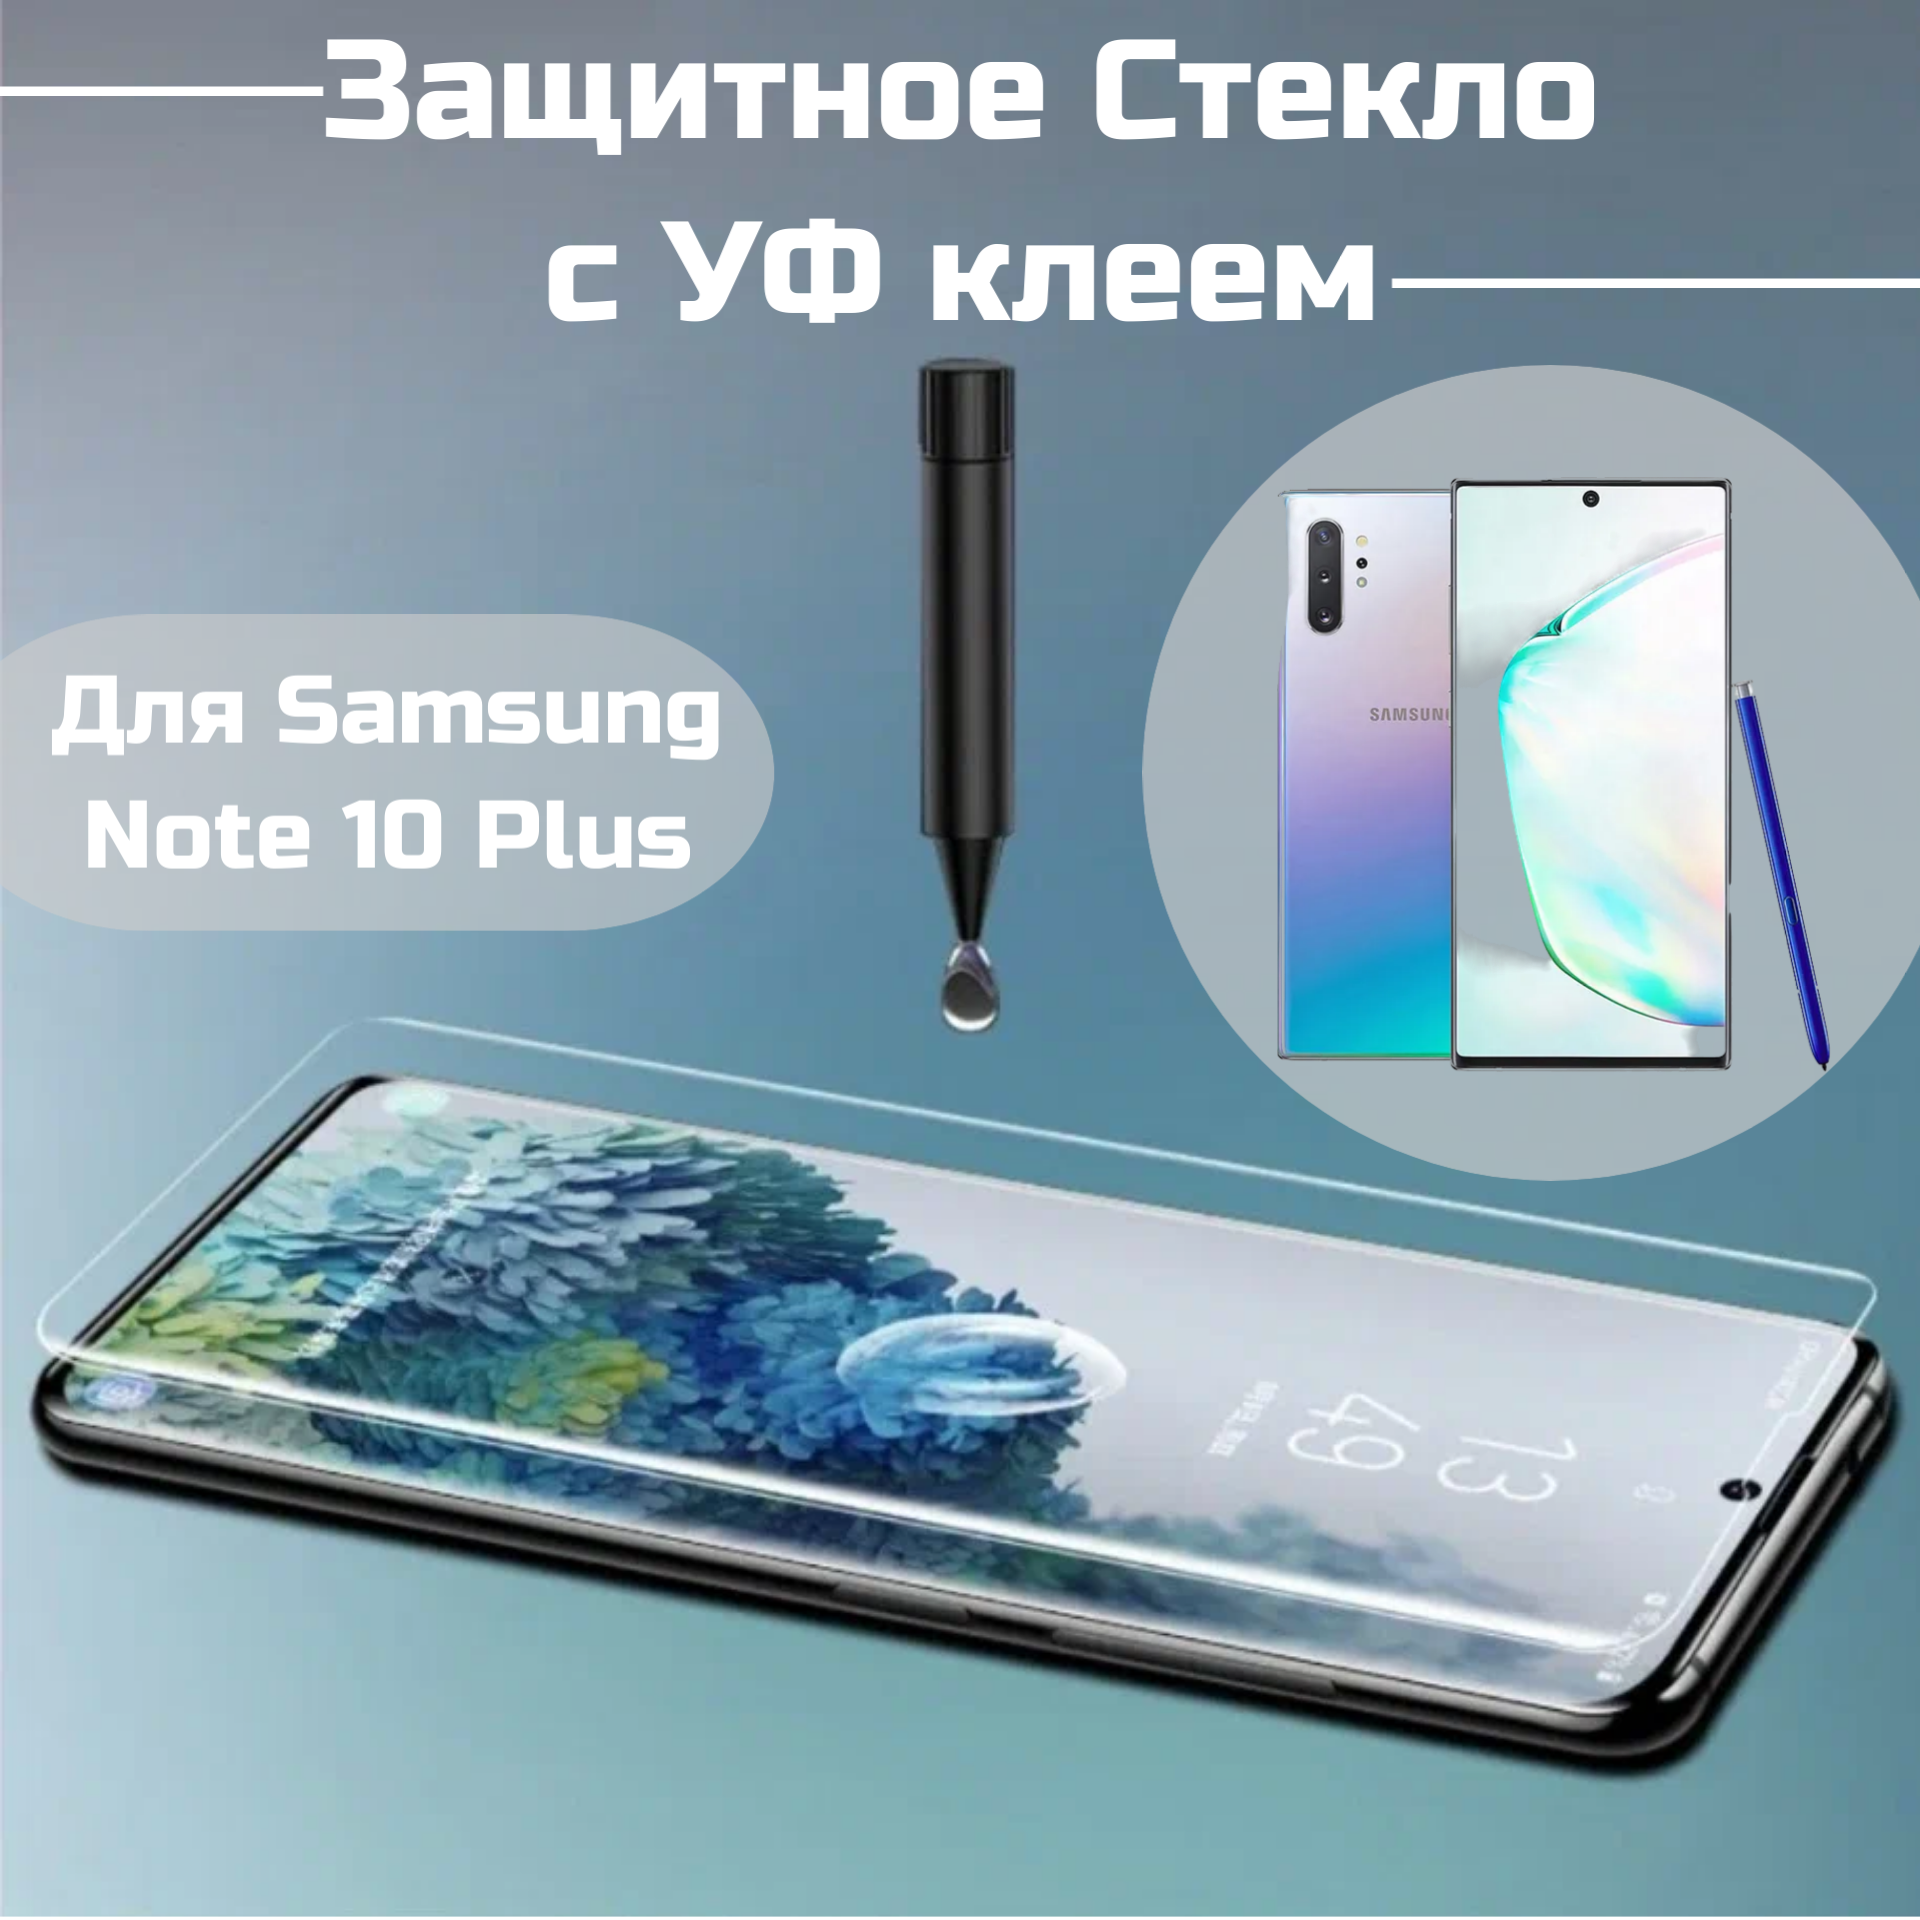 Защитное стекло Samsung Note 10 Plus с уф клеем и лампой / Полноэкранное стекло ноте 10 +